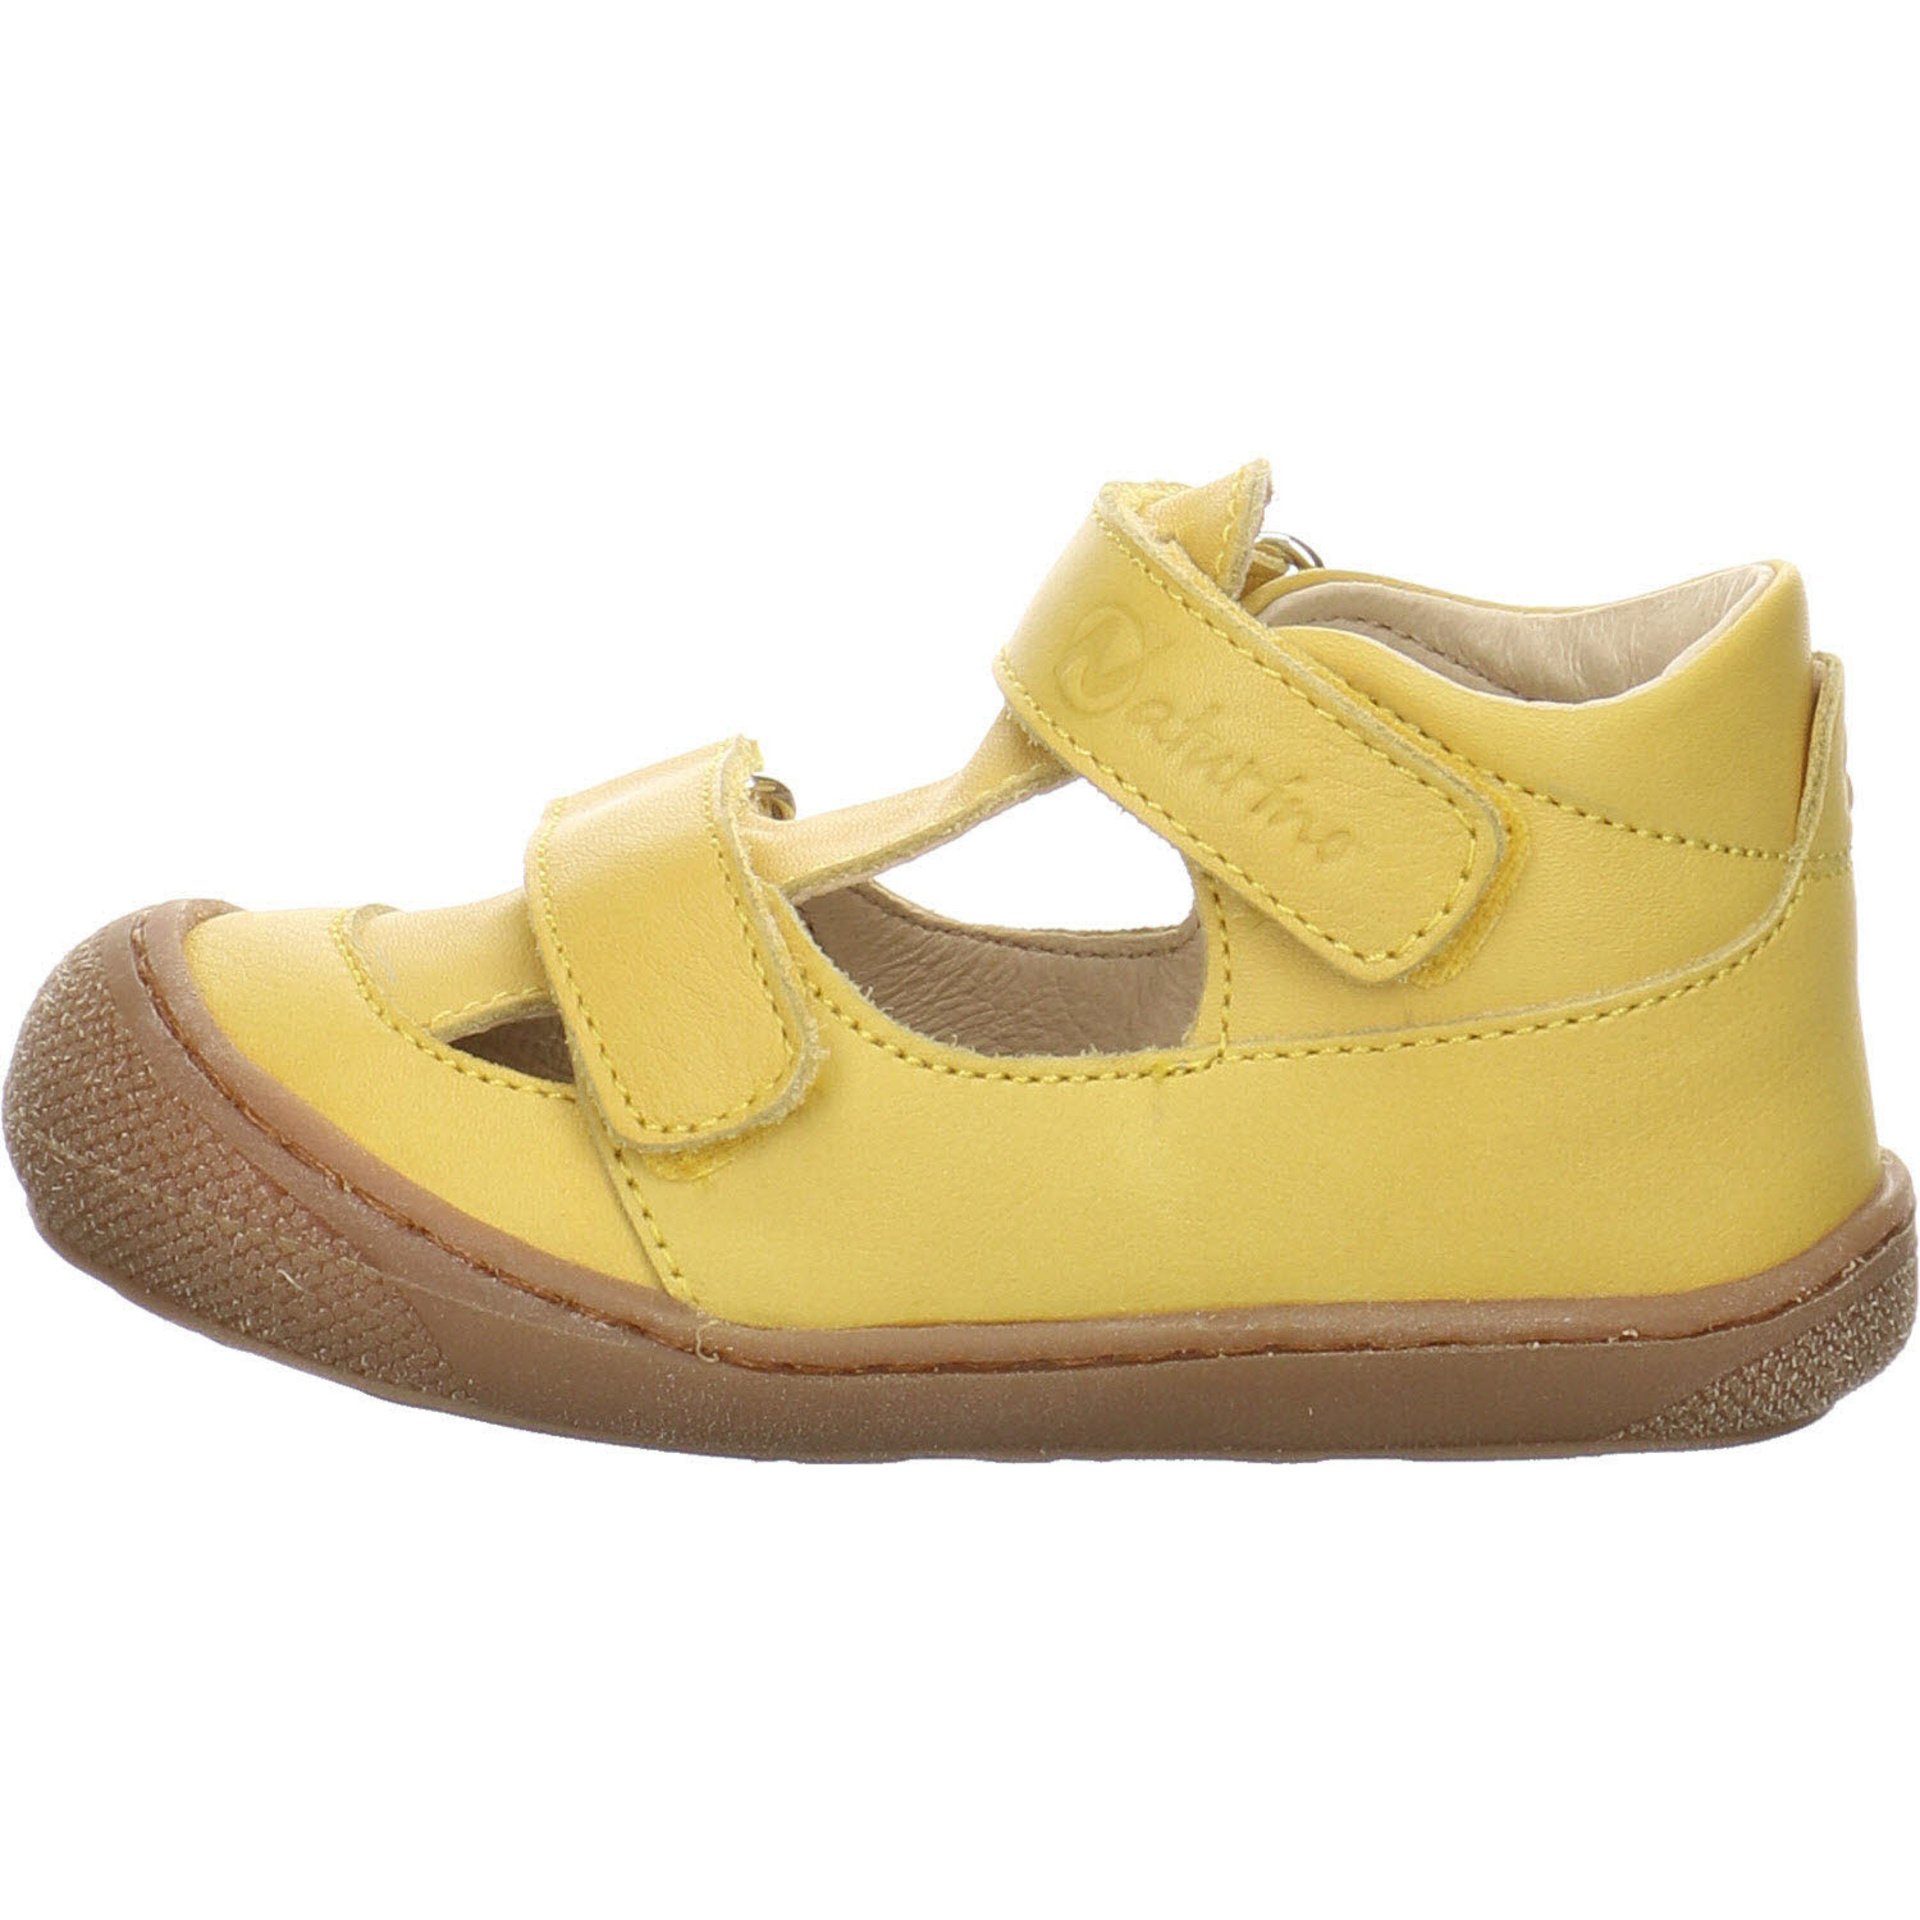 Jungen hell Puffy Naturino Sandalen Schuhe Minilette gelb Lauflernschuh Glattleder